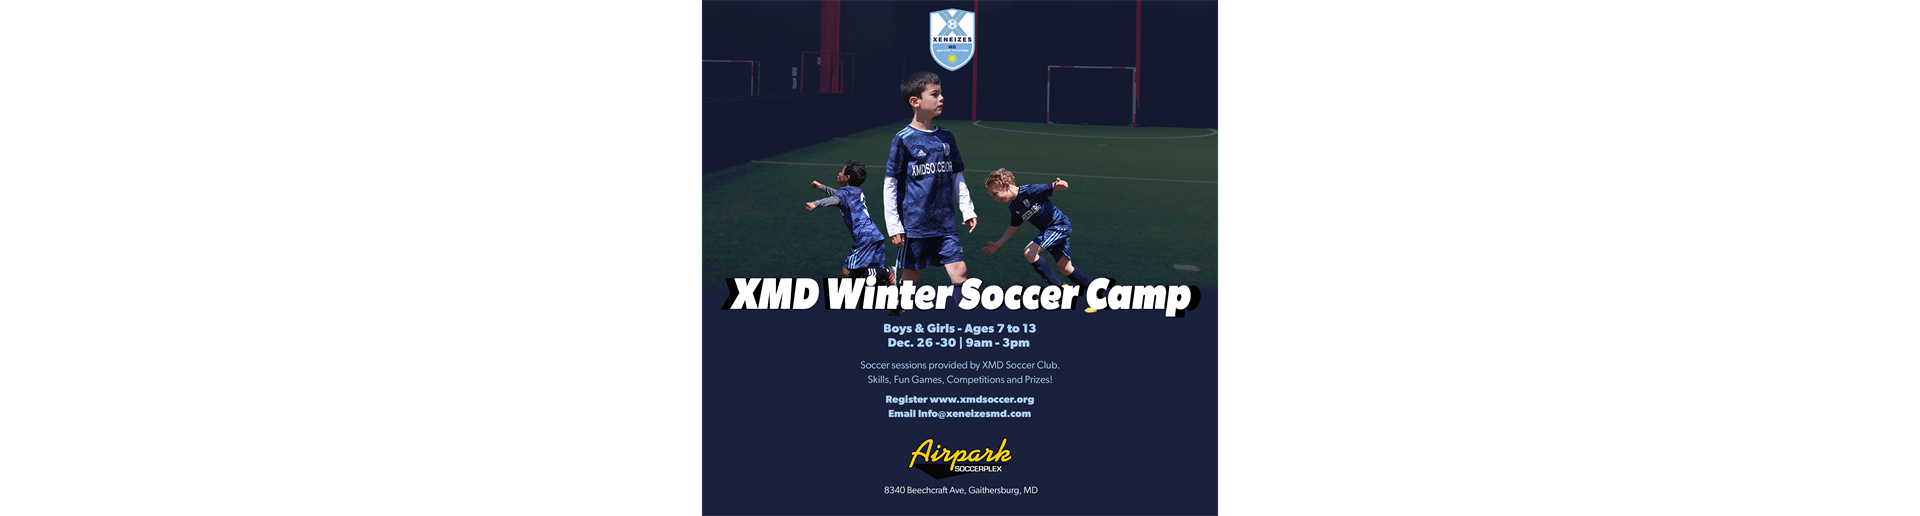 XMD Winter Soccer Camp Registration Open!